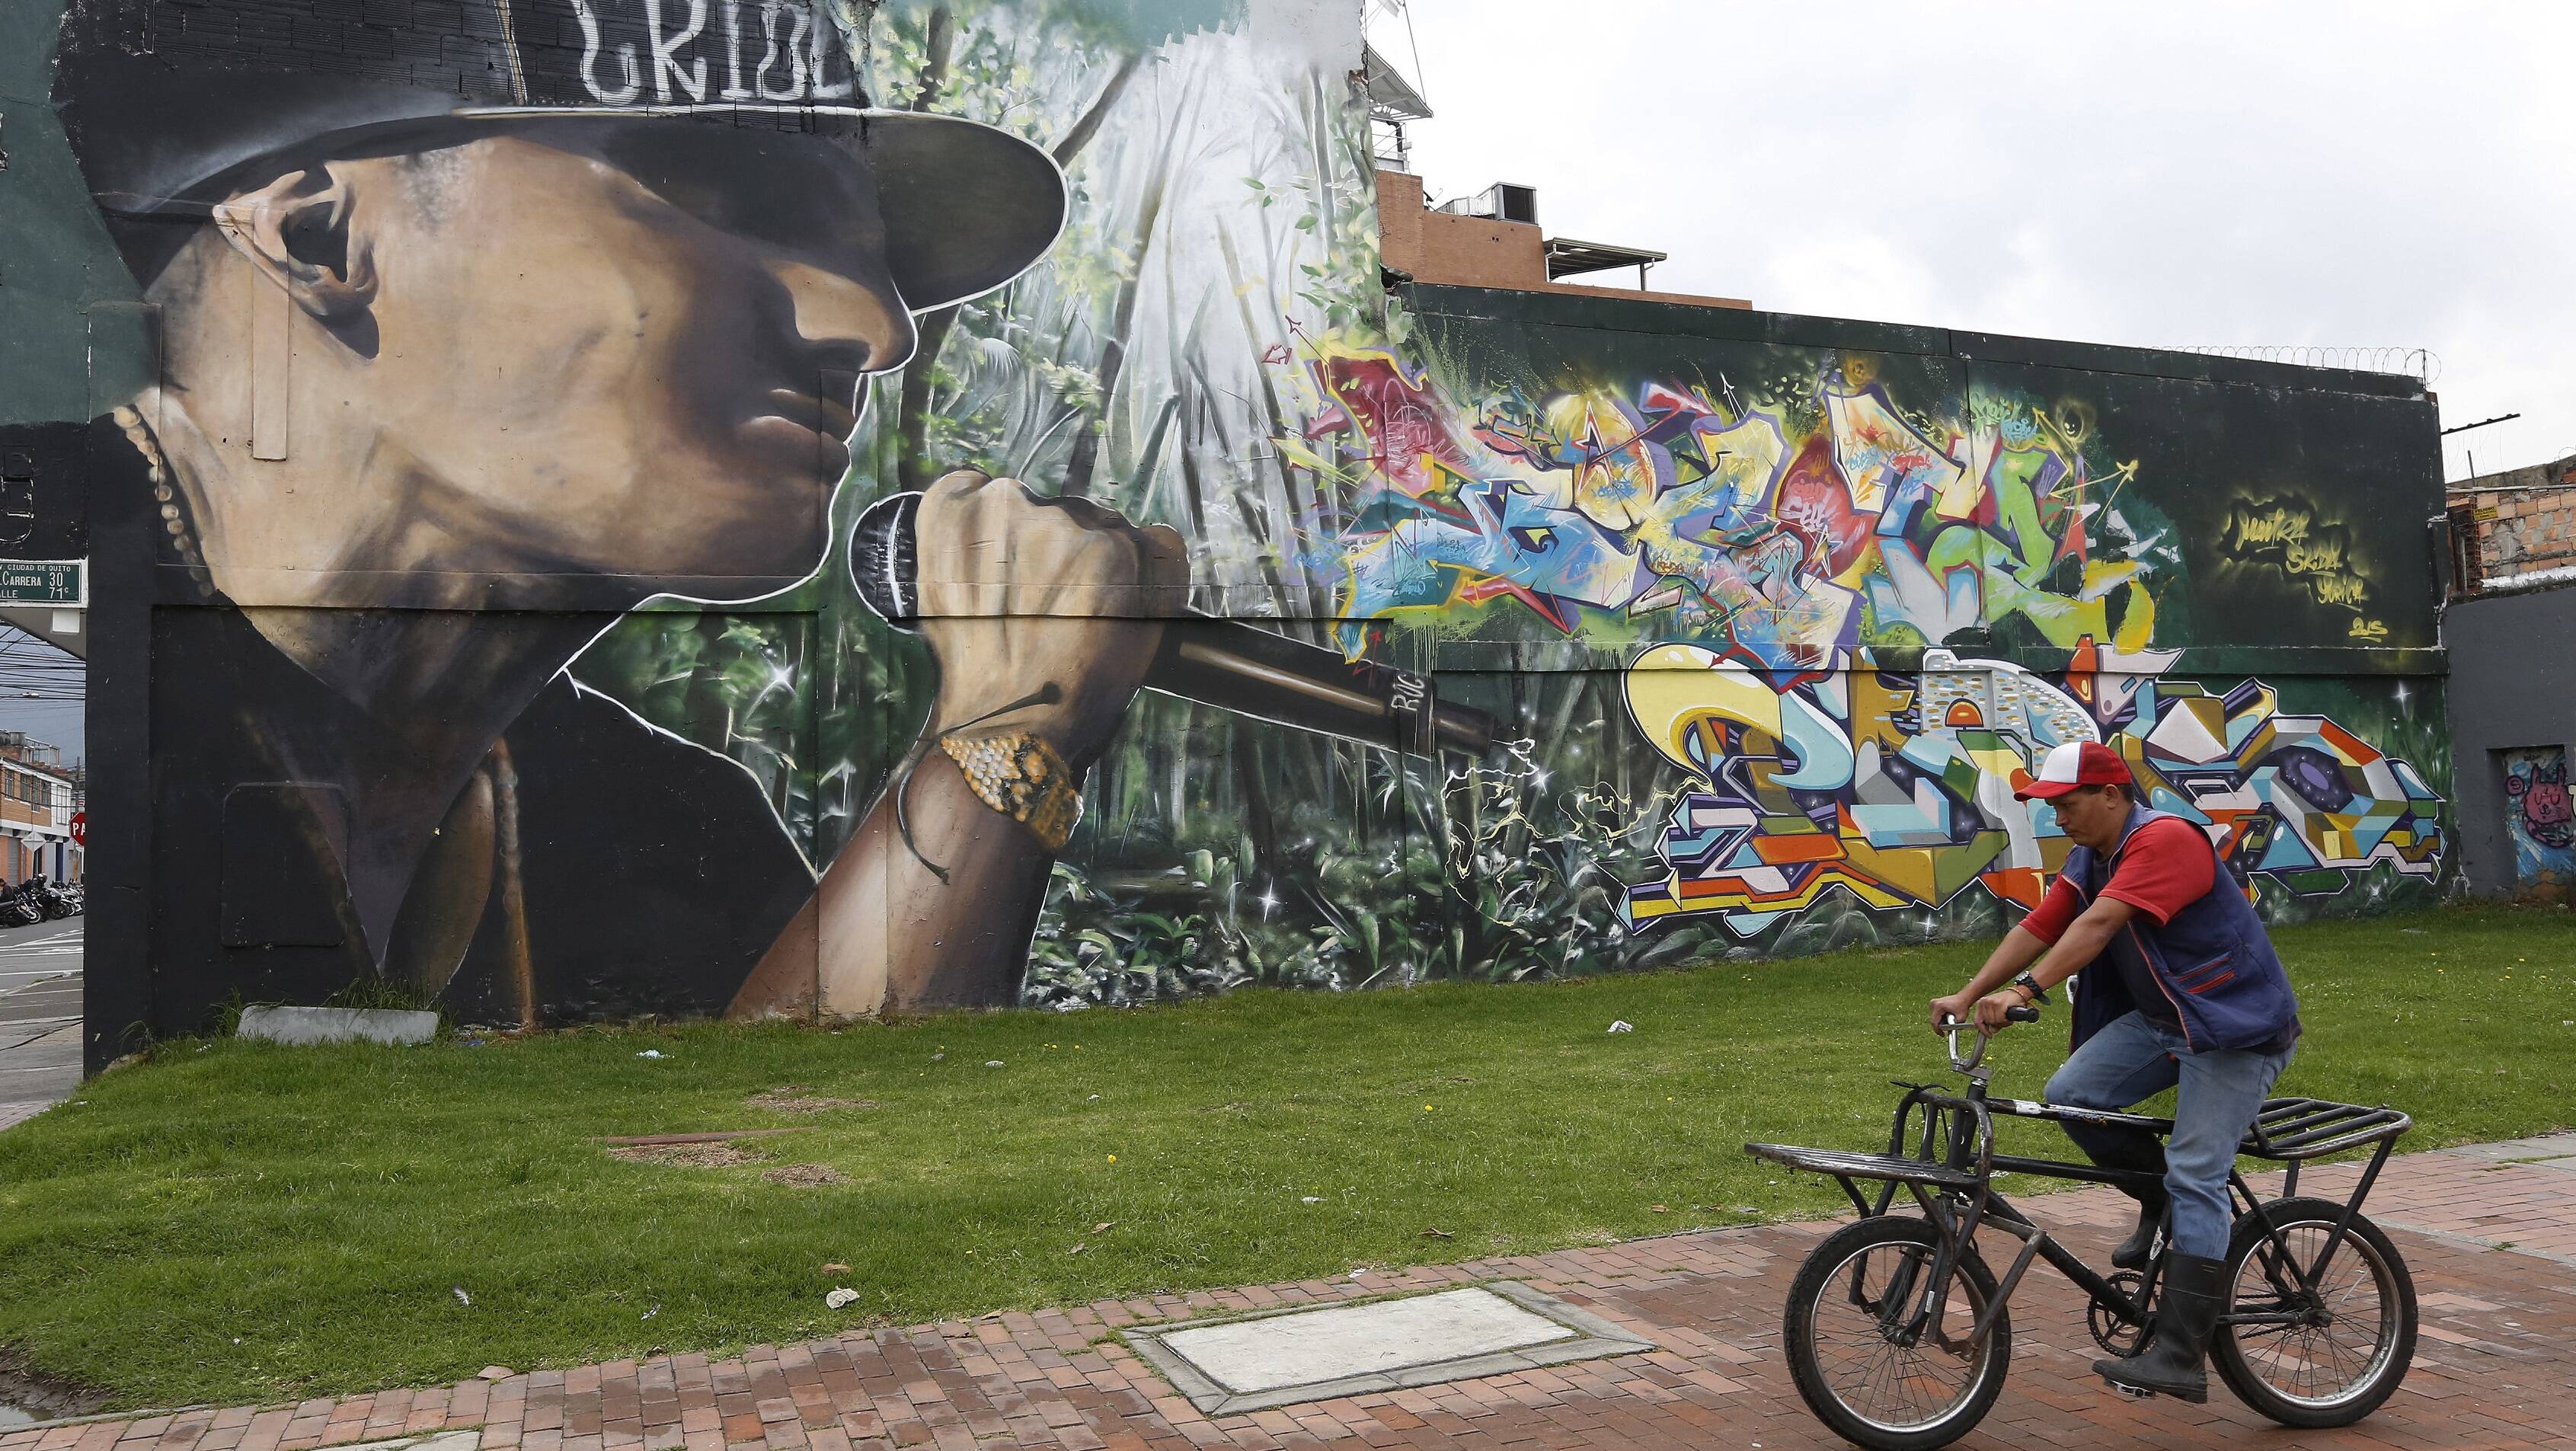 Pela quantidade e qualidade dos grafites, Bogotá é conhecida como a Meca do Grafite. Foto: Reprodução/Outra Cidade